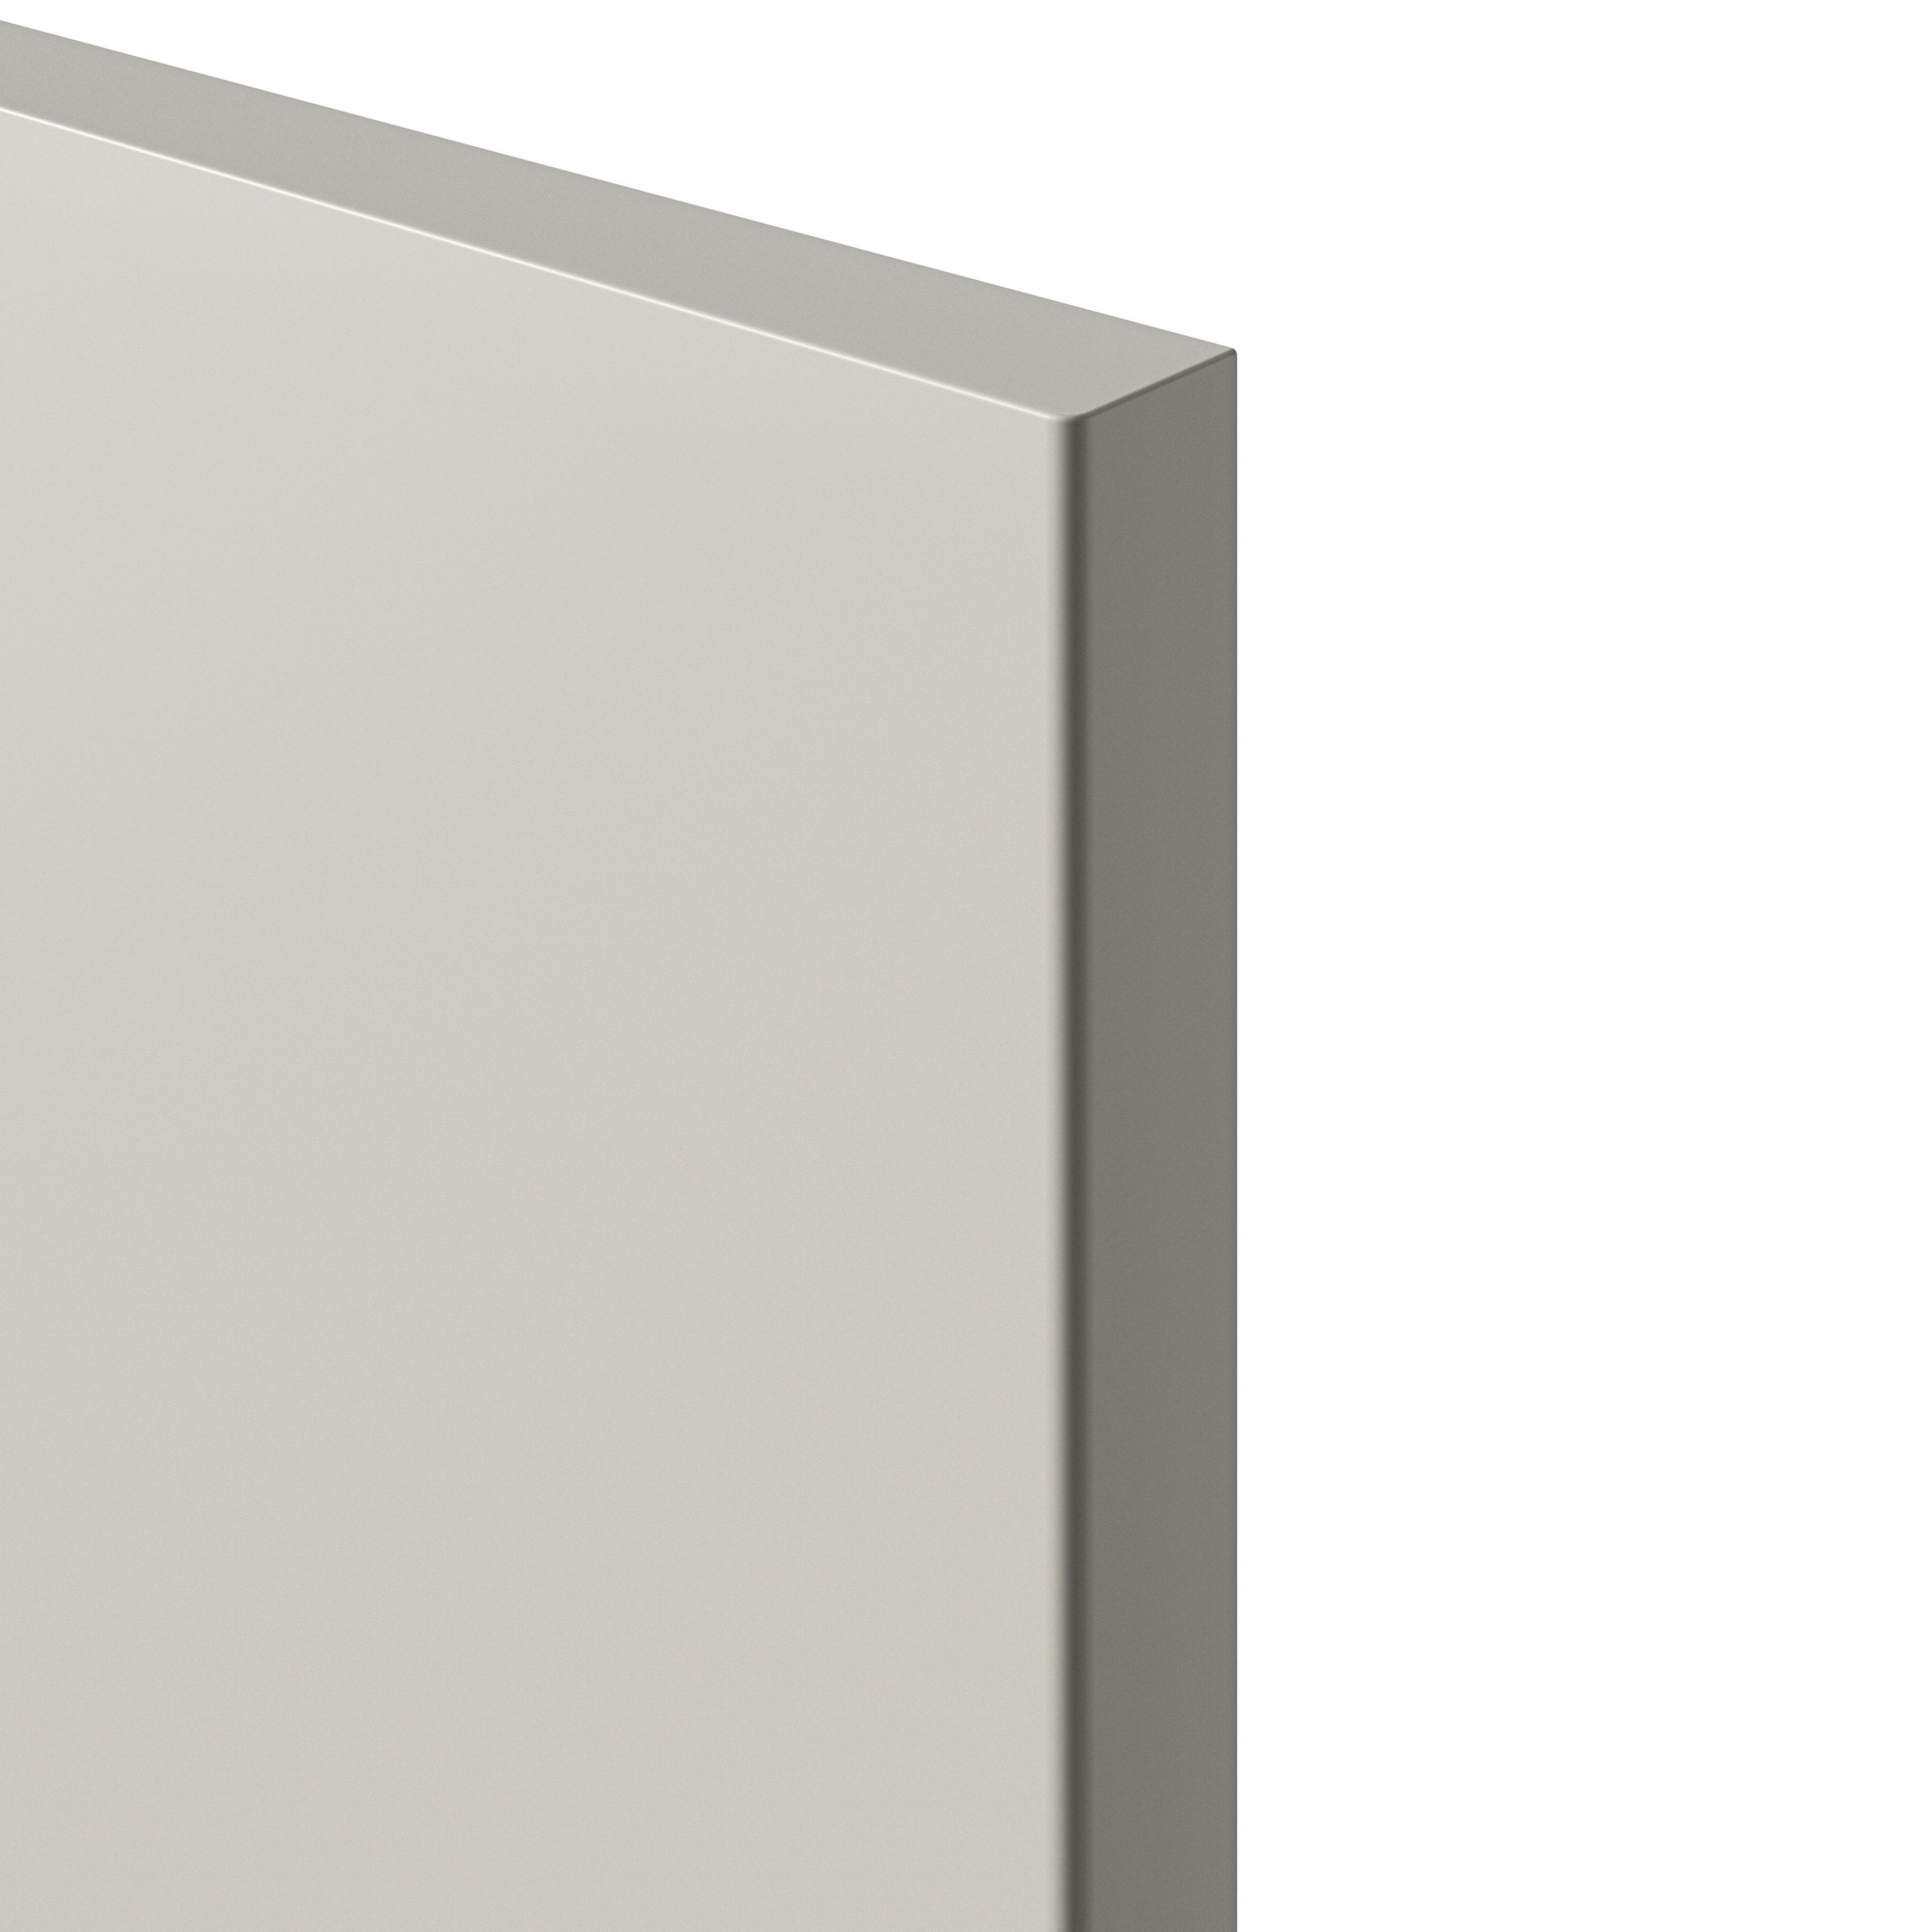 GoodHome Stevia Matt sandstone Drawer front, bridging door & bi fold door, (W)1000mm (H)356mm (T)18mm